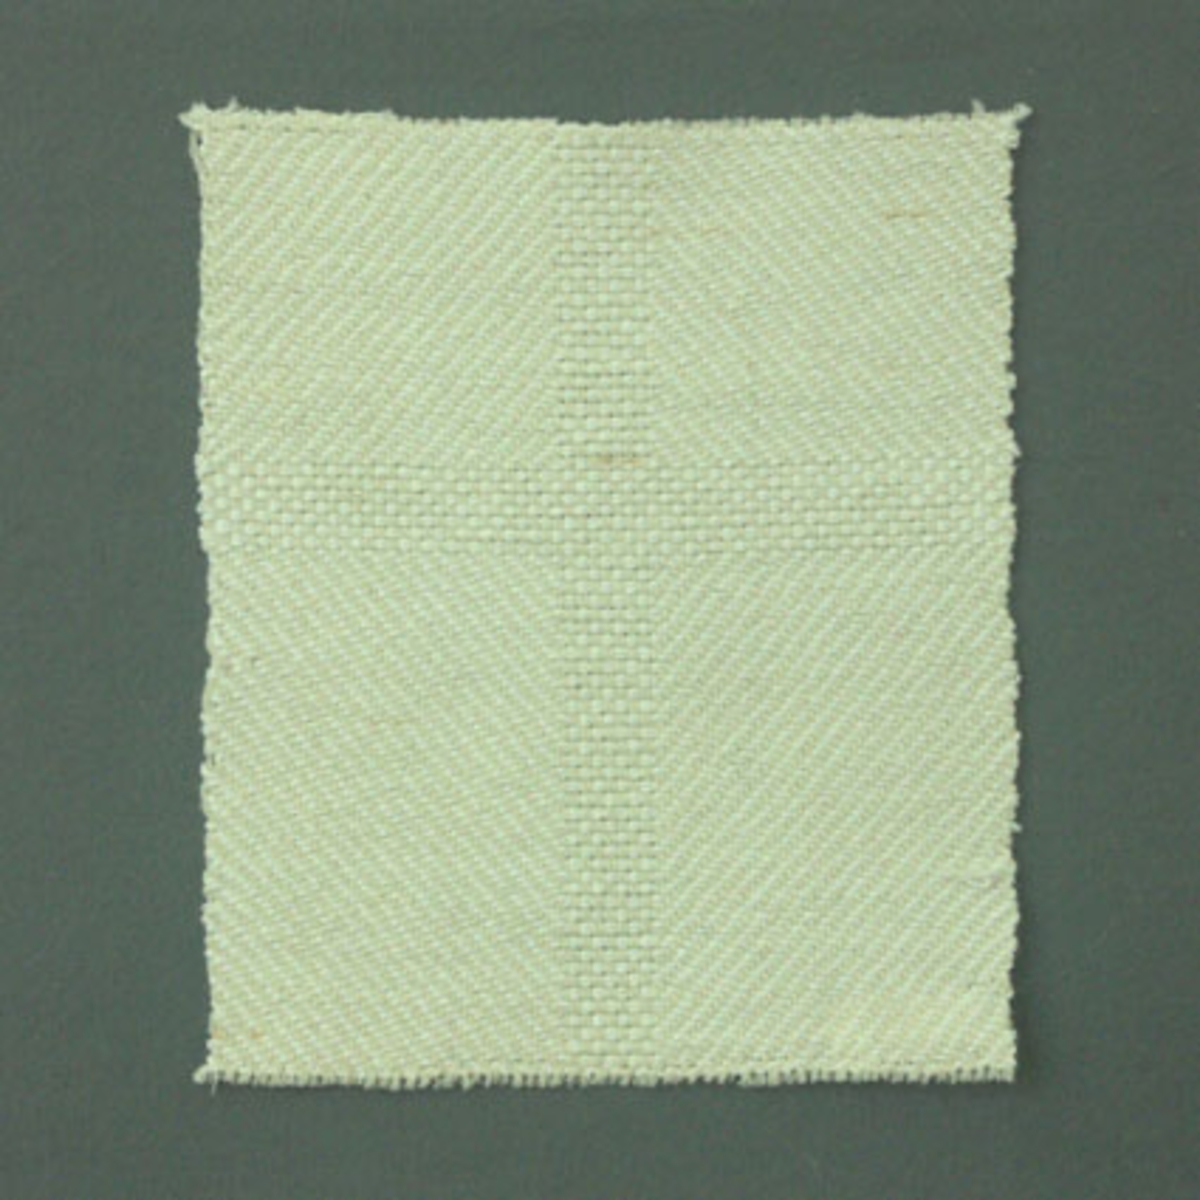 Prov till kyrklig textil enligt tidigare inventering, vävt i kypert och panama med ullgarn i varp och cottolin i inslag.